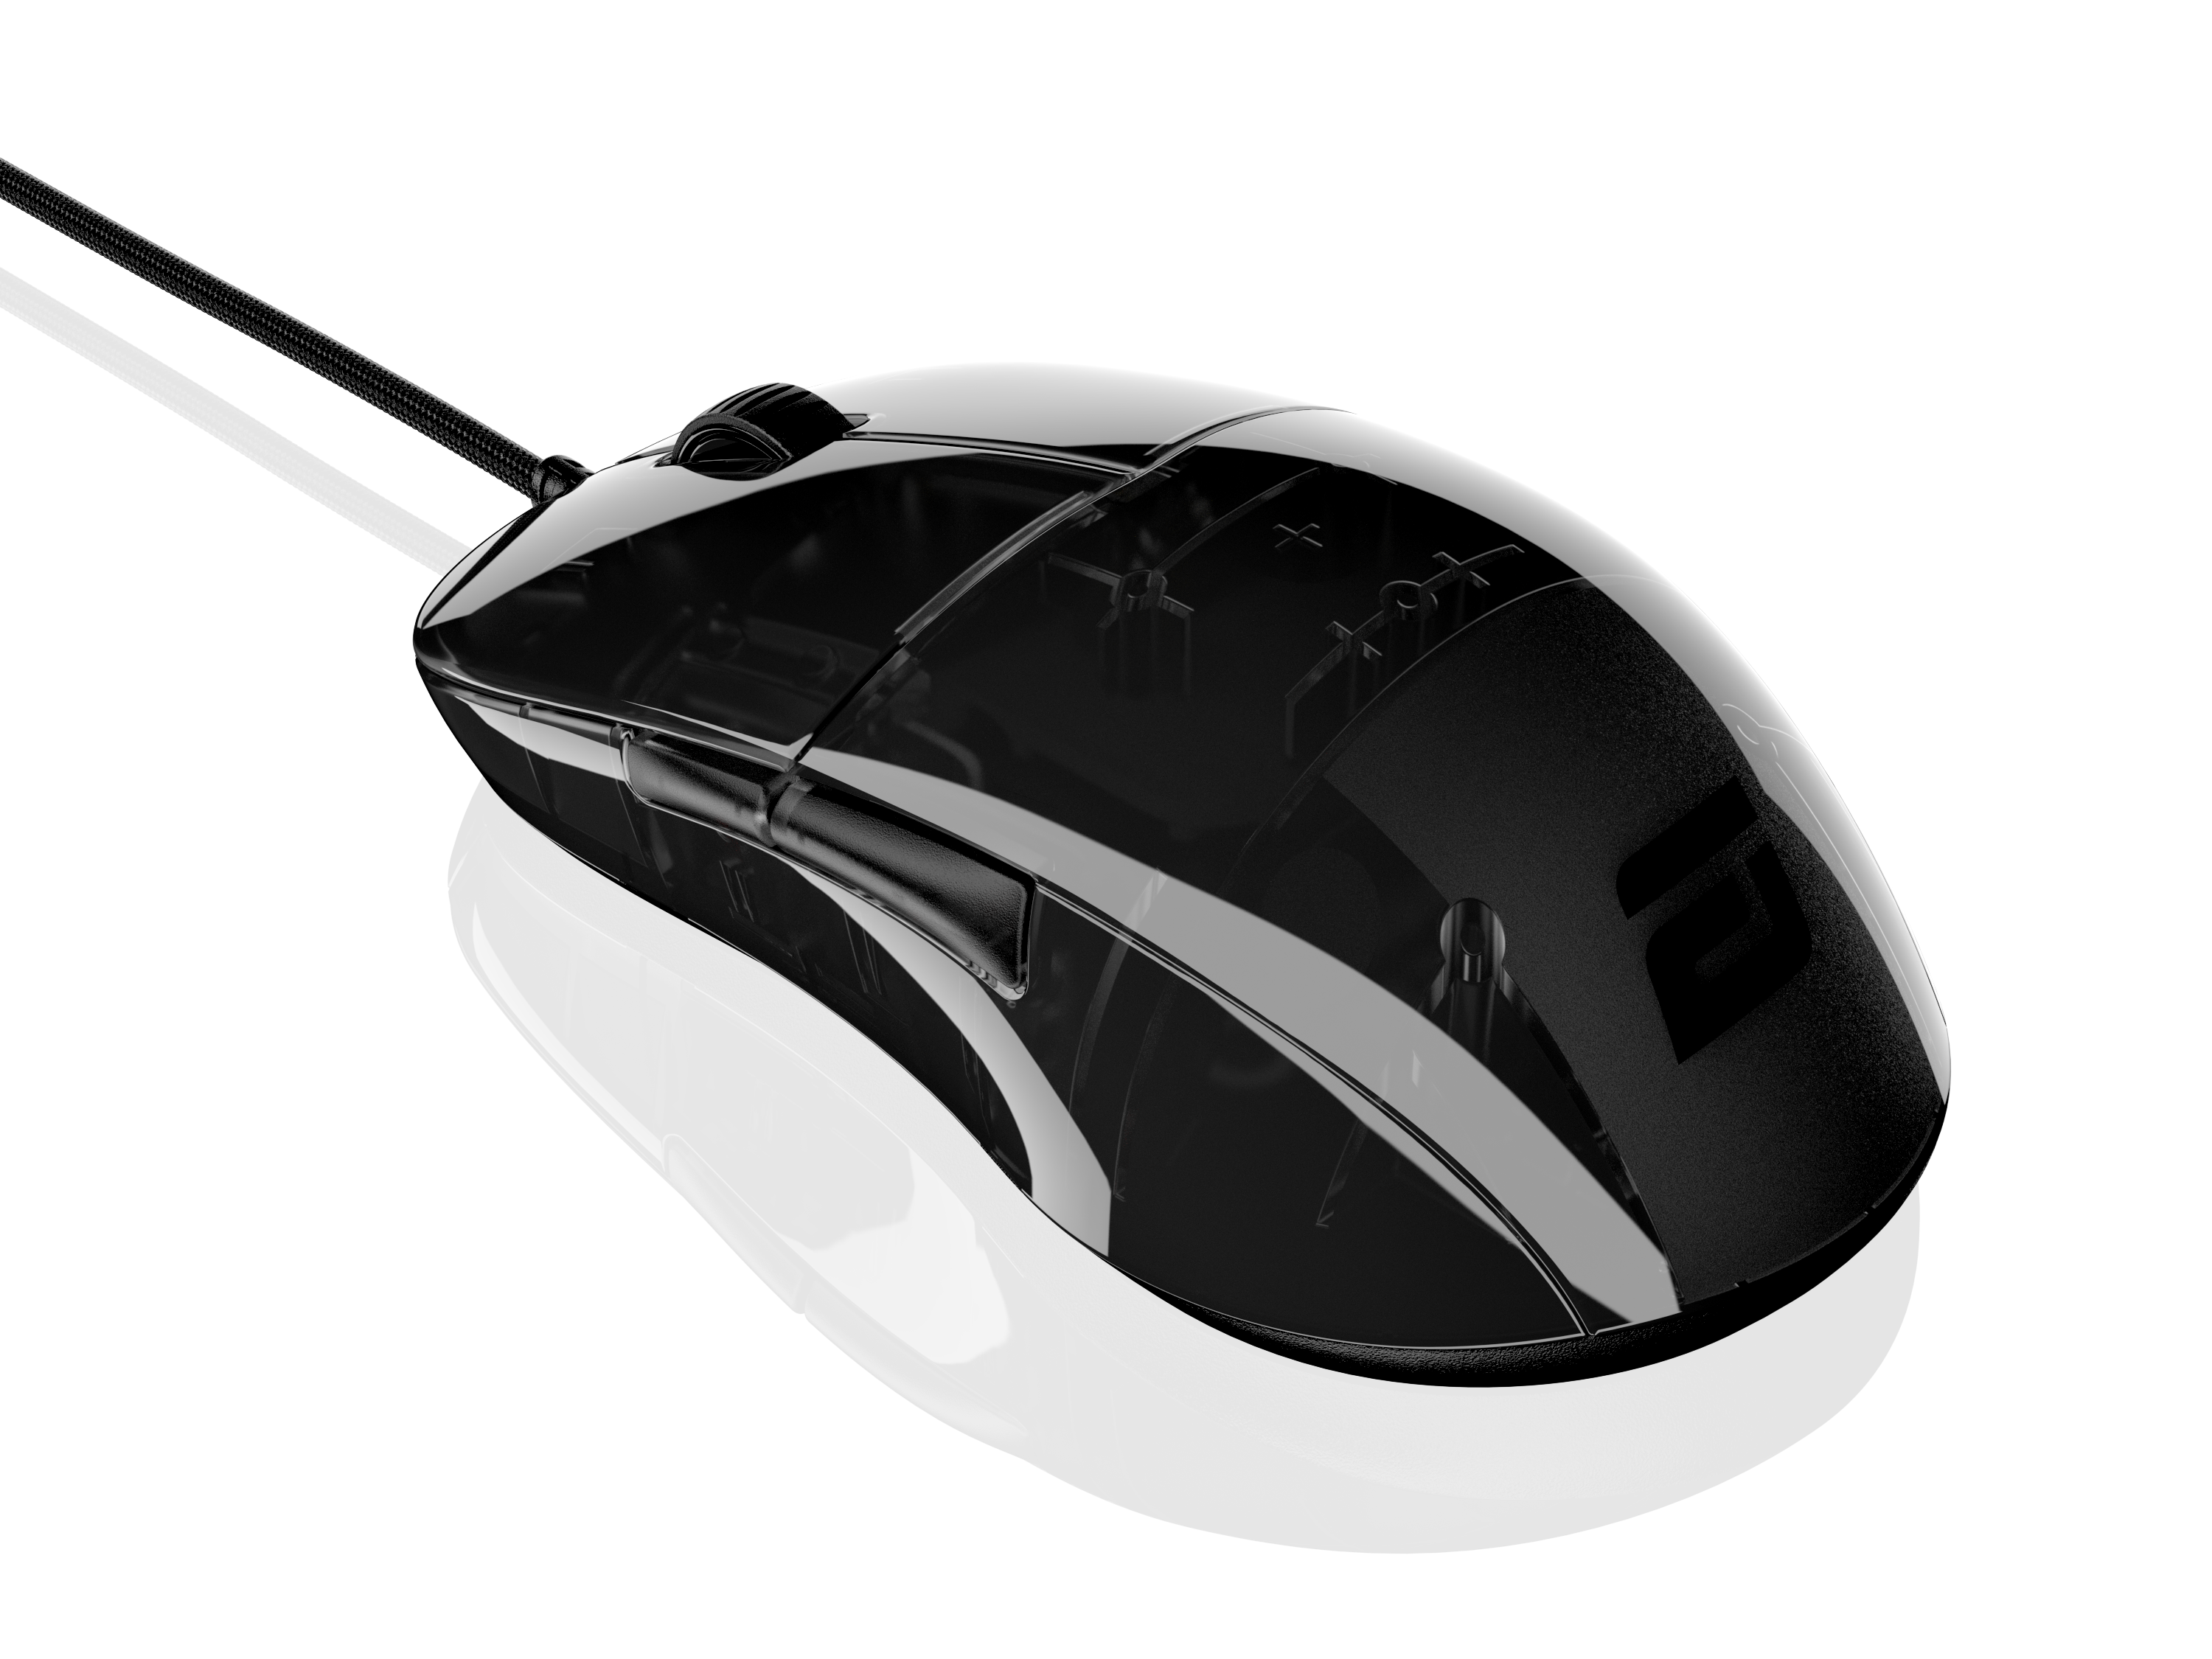 Hybrid skate design XM1r Gaming Mouse